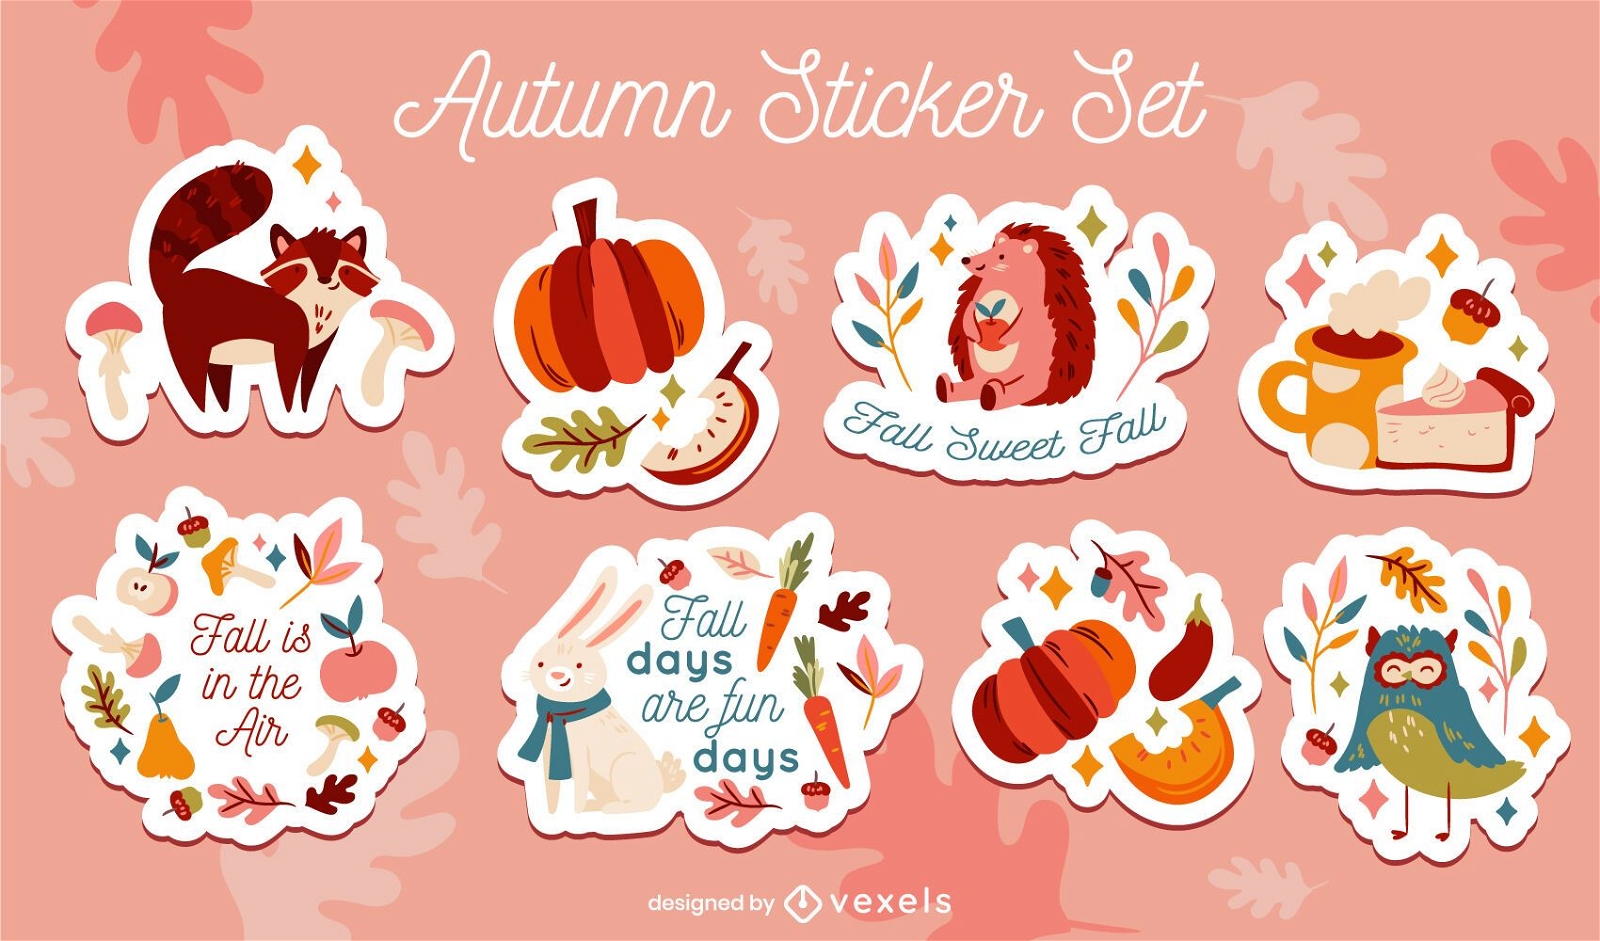 Fall Sweet Fall' Sticker